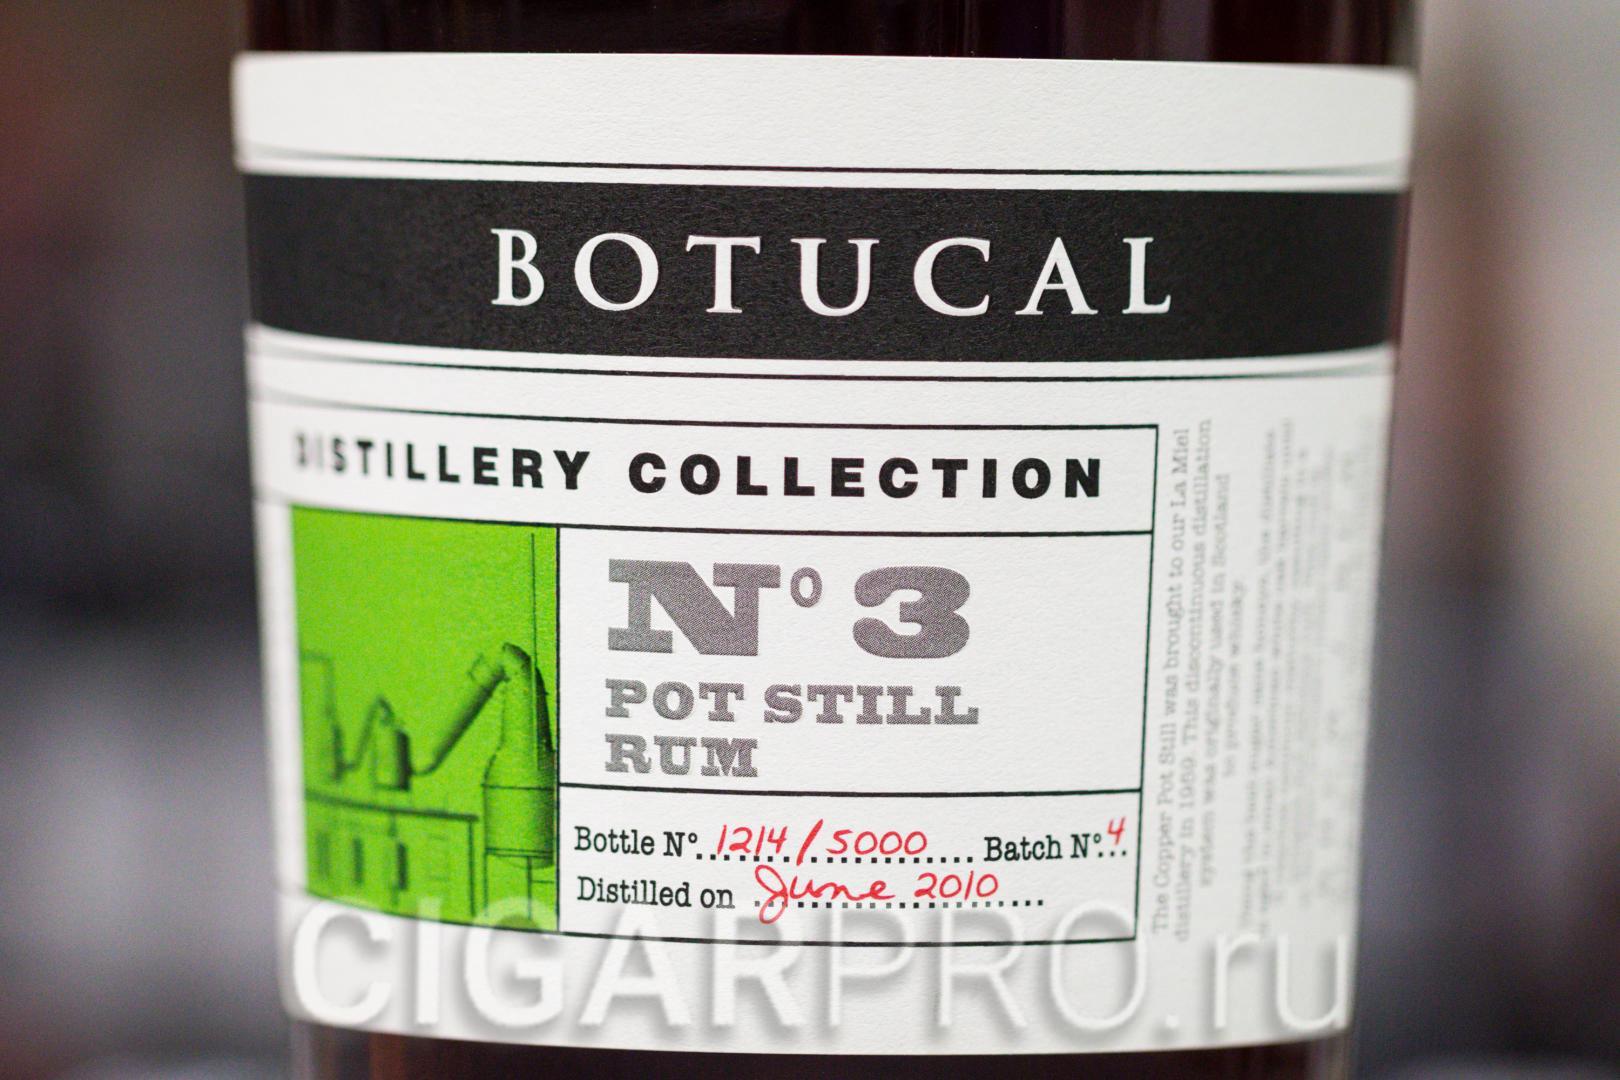 описание этикетки рома Botucal №3 Pot Still Distillery Collection